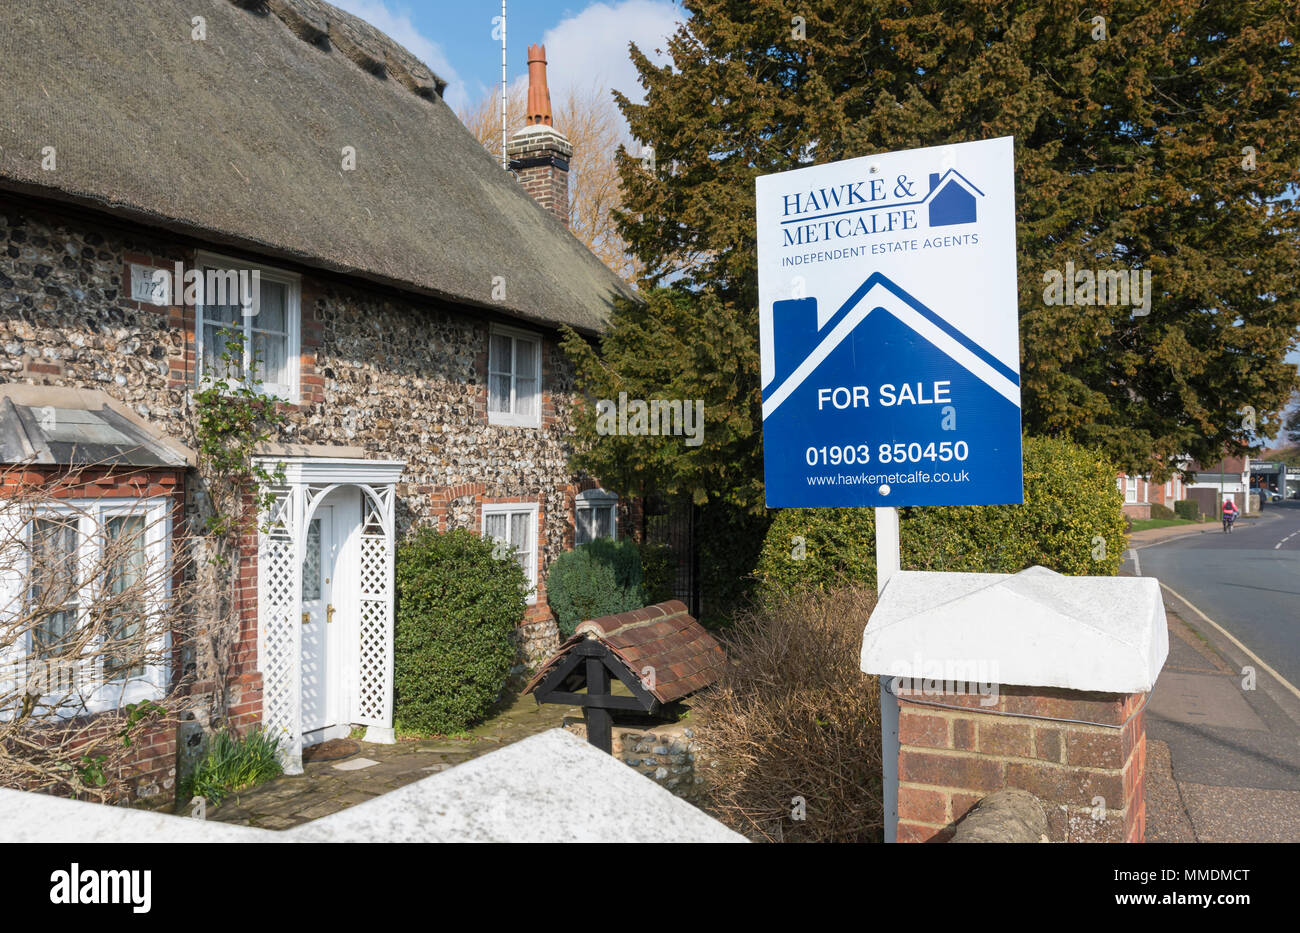 Für Verkauf Zeichen von Hawke & Metcalfe Immobilienmakler ein Haus für Verkauf in einem Dorf in England, Großbritannien. Stockfoto